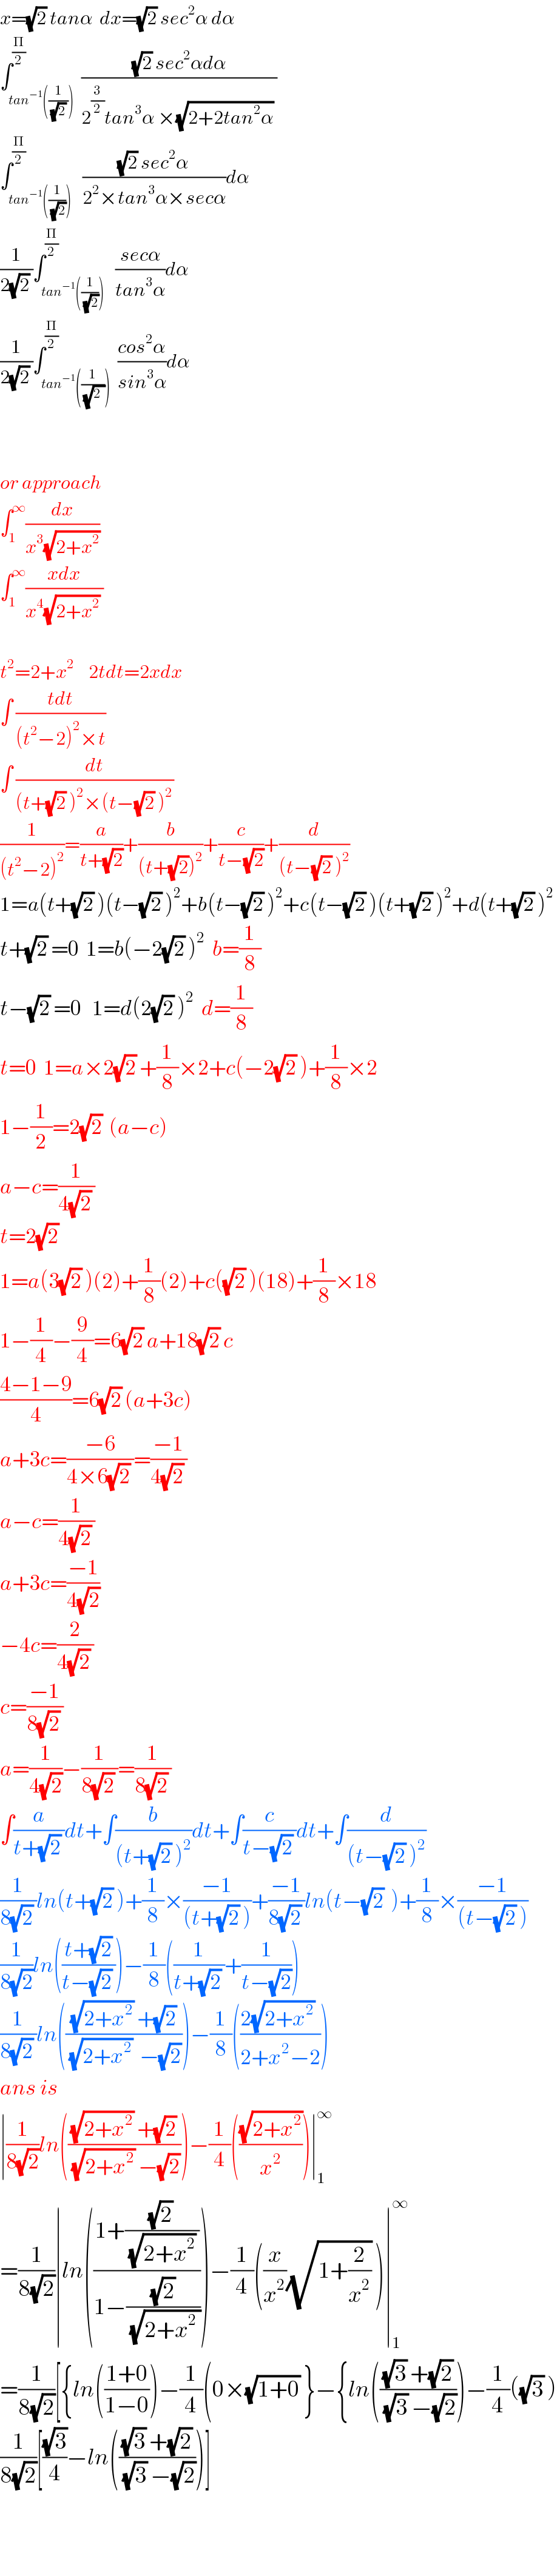 x=(√2) tanα  dx=(√2) sec^2 α dα  ∫_(tan^(−1) ((1/((√2) )))) ^(Π/2)  (((√2) sec^2 αdα)/(2^(3/2) tan^3 α ×(√(2+2tan^2 α)) ))  ∫_(tan^(−1) ((1/(√2)))) ^(Π/2)   (((√2) sec^2 α)/(2^2 ×tan^3 α×secα))dα  (1/(2(√2) ))∫_(tan^(−1) ((1/(√2)))) ^(Π/2)   ((secα)/(tan^3 α))dα  (1/(2(√2) ))∫_(tan^(−1) ((1/(√2_ )))) ^(Π/2)  ((cos^2 α)/(sin^3 α))dα      or approach  ∫_1 ^∞ (dx/(x^3 (√(2+x^2 ))))  ∫_1 ^∞ ((xdx)/(x^4 (√(2+x^2 )) ))    t^2 =2+x^2     2tdt=2xdx  ∫ ((tdt)/((t^2 −2)^2 ×t))  ∫ (dt/((t+(√2) )^2 ×(t−(√2) )^2 ))  (1/((t^2 −2)^2 ))=(a/(t+(√2)))+(b/((t+(√2))^2 ))+(c/(t−(√2)))+(d/((t−(√2) )^2 ))  1=a(t+(√2) )(t−(√2) )^2 +b(t−(√2) )^2 +c(t−(√2) )(t+(√2) )^2 +d(t+(√2) )^2   t+(√2) =0  1=b(−2(√2) )^2   b=(1/8)  t−(√2) =0   1=d(2(√2) )^2   d=(1/8)  t=0  1=a×2(√2) +(1/8)×2+c(−2(√2) )+(1/8)×2  1−(1/2)=2(√2)  (a−c)  a−c=(1/(4(√2) ))  t=2(√2)   1=a(3(√2) )(2)+(1/8)(2)+c((√2) )(18)+(1/8)×18  1−(1/4)−(9/4)=6(√2) a+18(√2) c  ((4−1−9)/4)=6(√2) (a+3c)  a+3c=((−6)/(4×6(√2) ))=((−1)/(4(√2) ))  a−c=(1/(4(√2) ))  a+3c=((−1)/(4(√2)))  −4c=(2/(4(√2) ))  c=((−1)/(8(√2) ))  a=(1/(4(√2)))−(1/(8(√2) ))=(1/(8(√2) ))  ∫(a/(t+(√2) ))dt+∫(b/((t+(√2) )^2 ))dt+∫(c/(t−(√2) ))dt+∫(d/((t−(√2) )^2 ))  (1/(8(√2) ))ln(t+(√2) )+(1/8)×((−1)/((t+(√2) )))+((−1)/(8(√2) ))ln(t−(√2)  )+(1/8)×((−1)/((t−(√2) )))  (1/(8(√2)))ln(((t+(√2))/(t−(√2) )))−(1/8)((1/(t+(√2) ))+(1/(t−(√2))))  (1/(8(√2) ))ln((((√(2+x^2 )) +(√2))/((√(2+x^2 ))  −(√2))))−(1/8)(((2(√(2+x^2 )) )/(2+x^2 −2)))  ans is  ∣(1/(8(√2)))ln((((√(2+x^2 )) +(√2))/((√(2+x^2 )) −(√2))))−(1/4)(((√(2+x^2 ))/x^2 ))∣_1 ^∞   =(1/(8(√2)))∣ln(((1+(((√2) )/((√(2+x^2 )) )))/(1−((√2)/(√(2+x^2  ))))))−(1/4)((x/x^2 )(√(1+(2/x^2 ))) )∣_1 ^∞   =(1/(8(√2)))[{ln(((1+0)/(1−0)))−(1/4)(0×(√(1+0)) }−{ln((((√3) +(√2))/((√3) −(√2))))−(1/4)((√3) )  (1/(8(√2)))[((√3)/4)−ln((((√3) +(√2))/((√3) −(√2))))]      